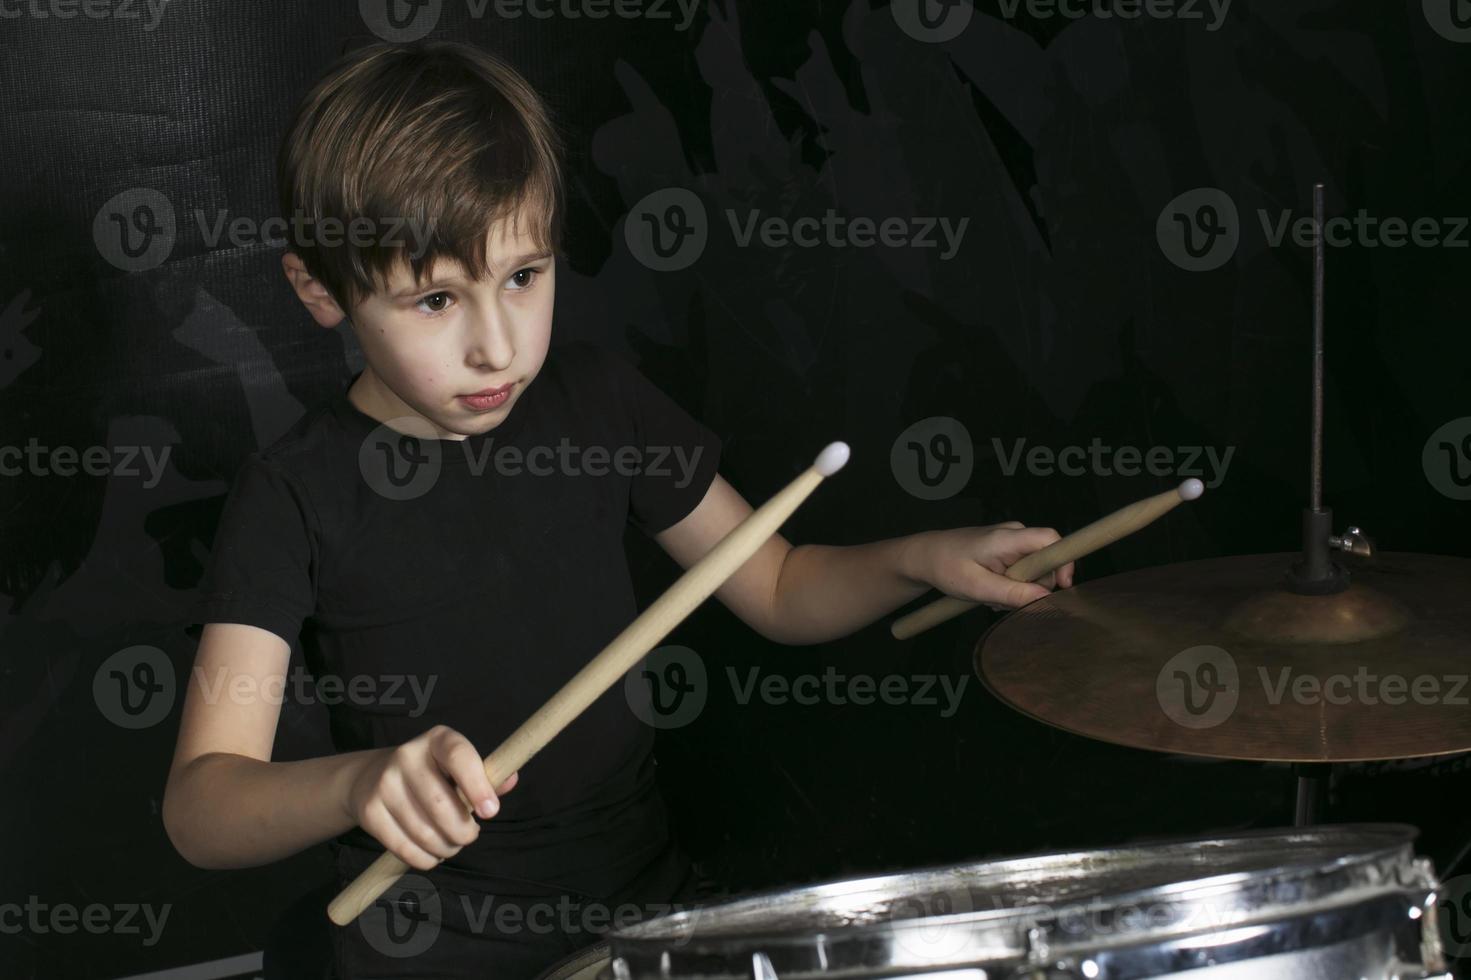 de barn Bakom de trumma. en pojke med trumpinnar Bakom en trumma utrustning. foto